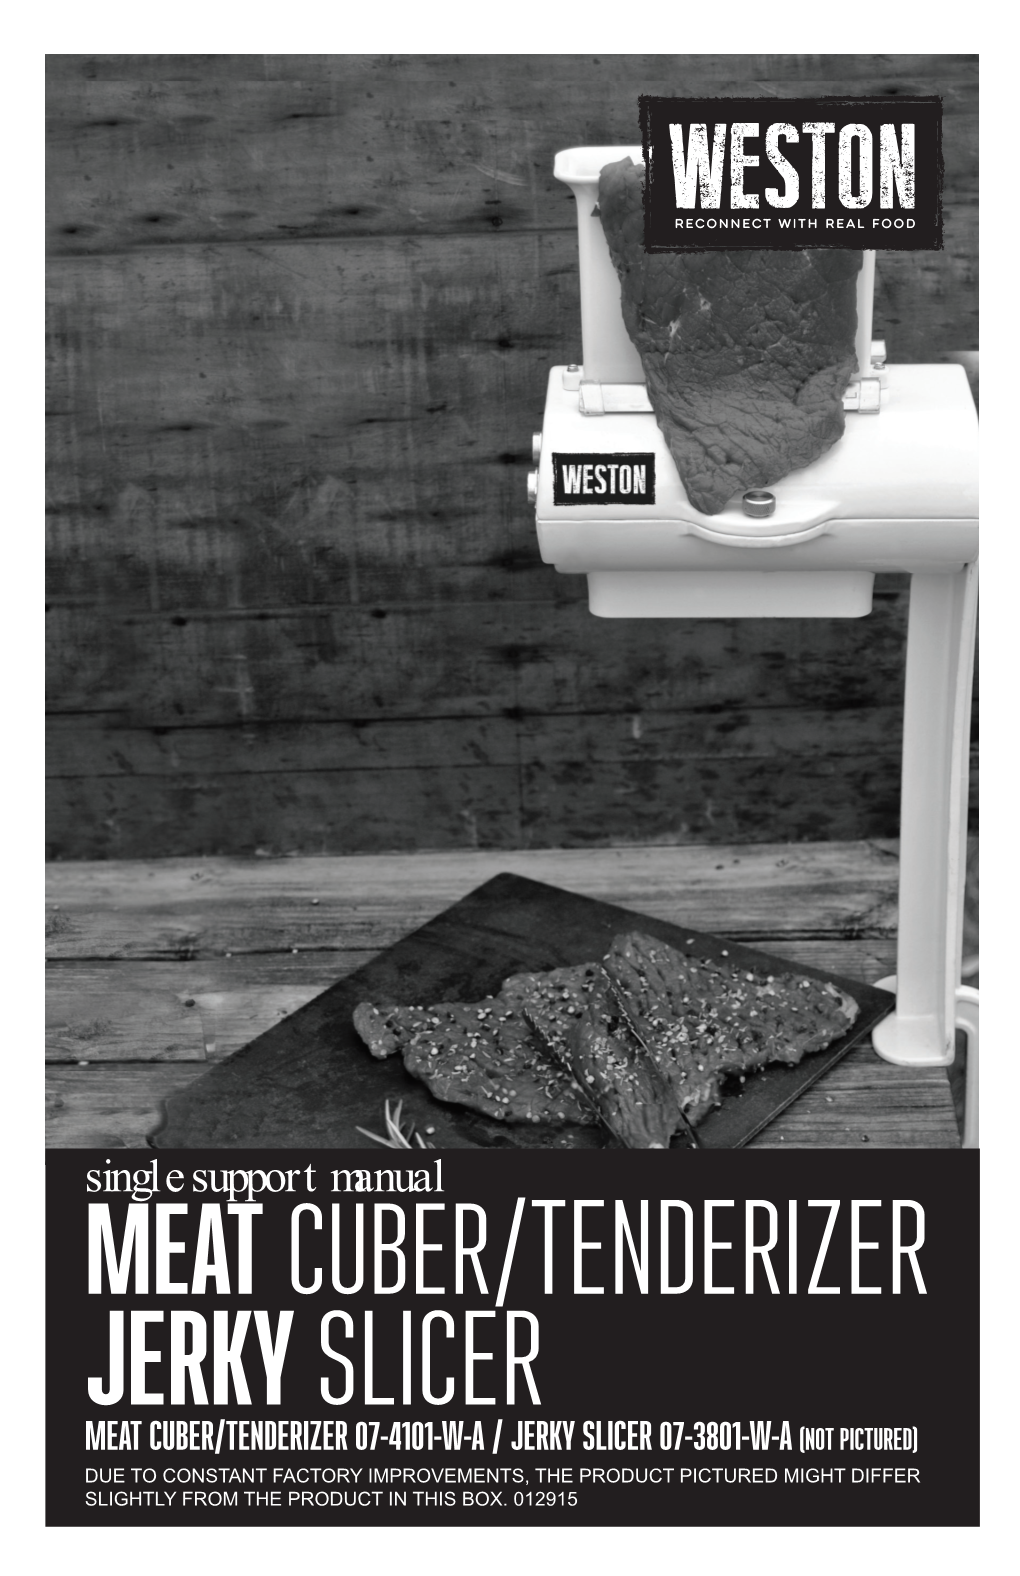 Meat Cuber/Tenderizer Jerkyslicer